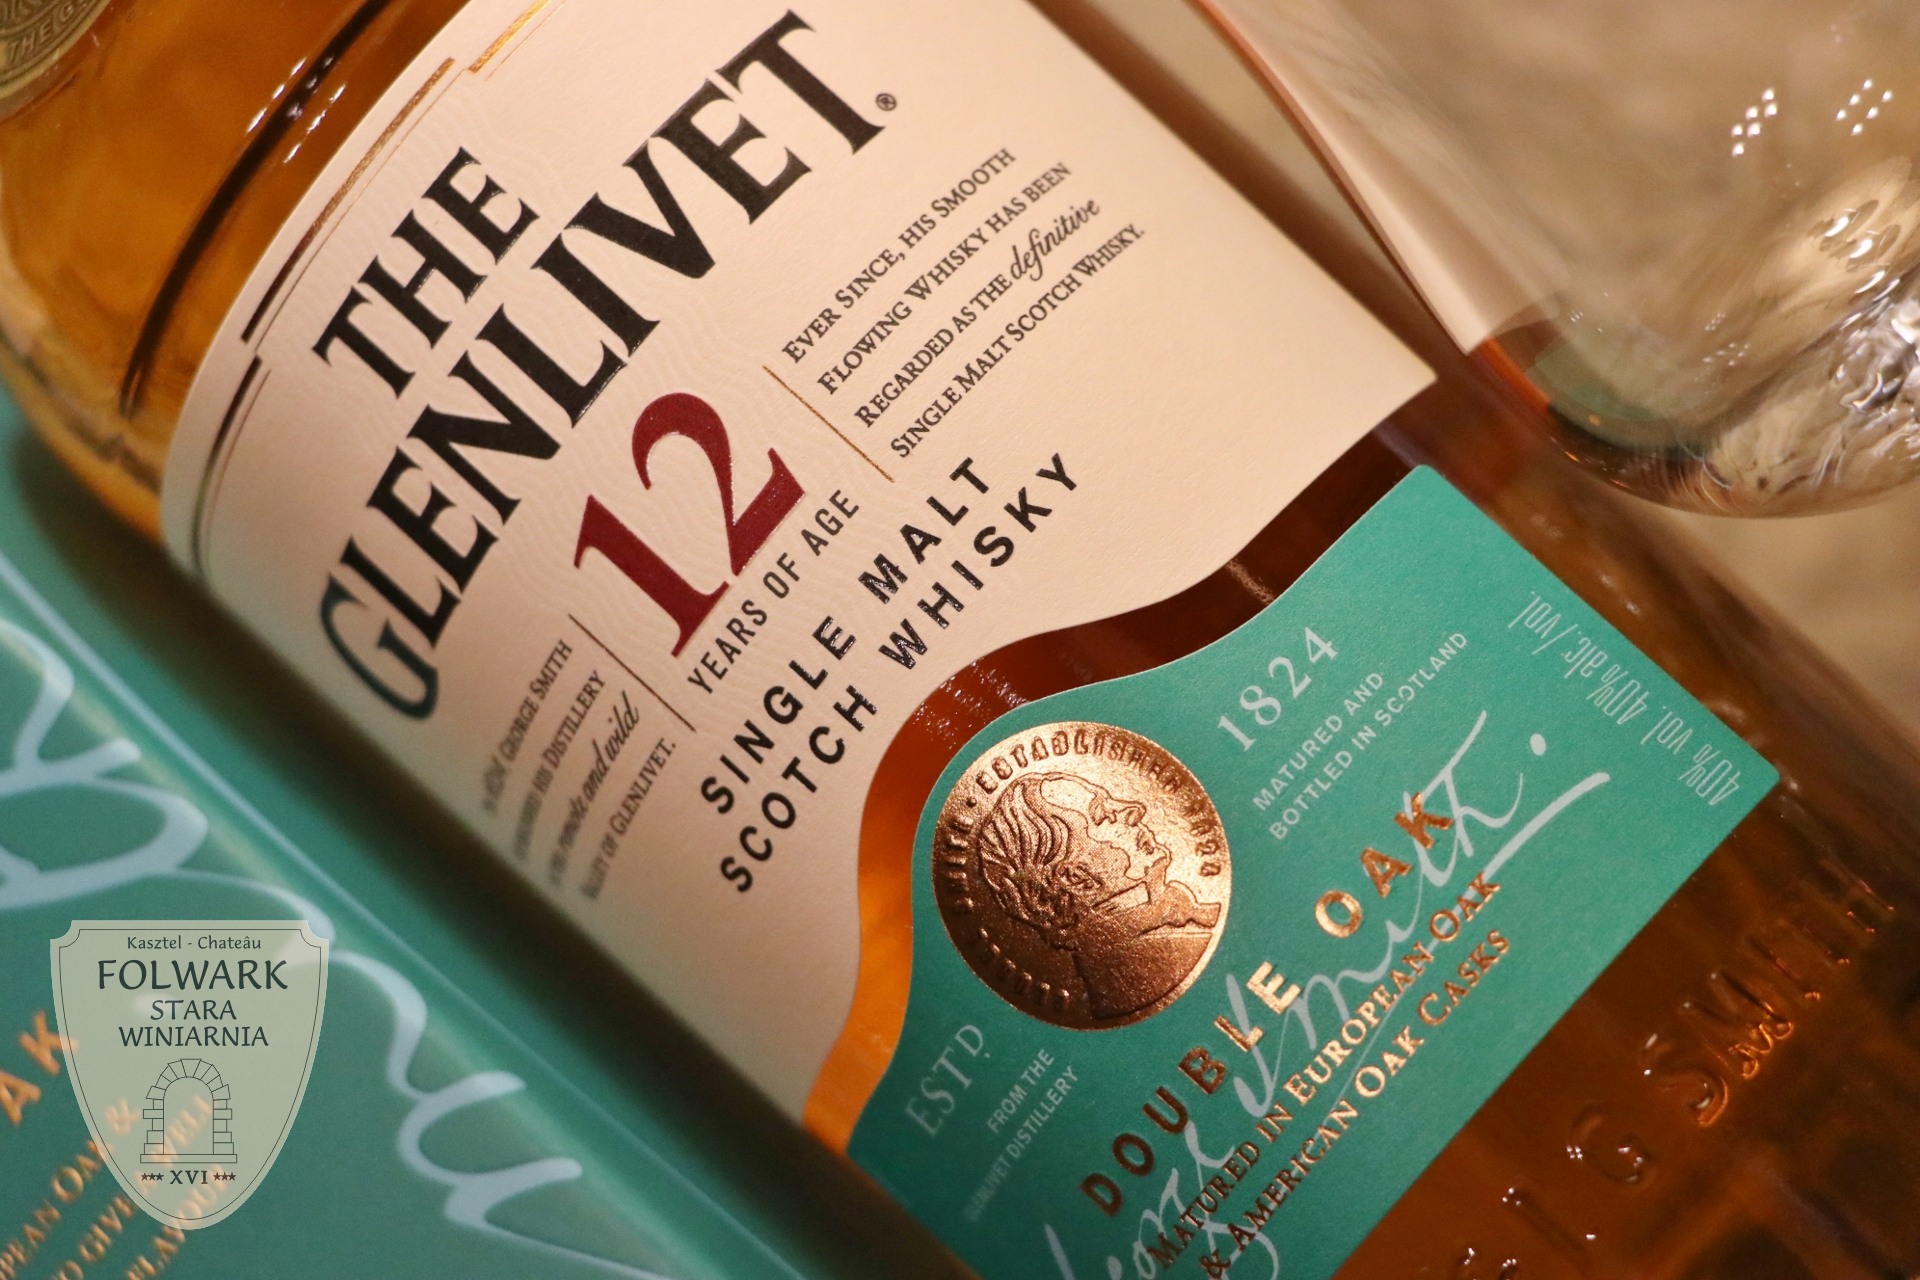 The Glenlivet 12 YO Double Oak Single Malt Scotch Whisky